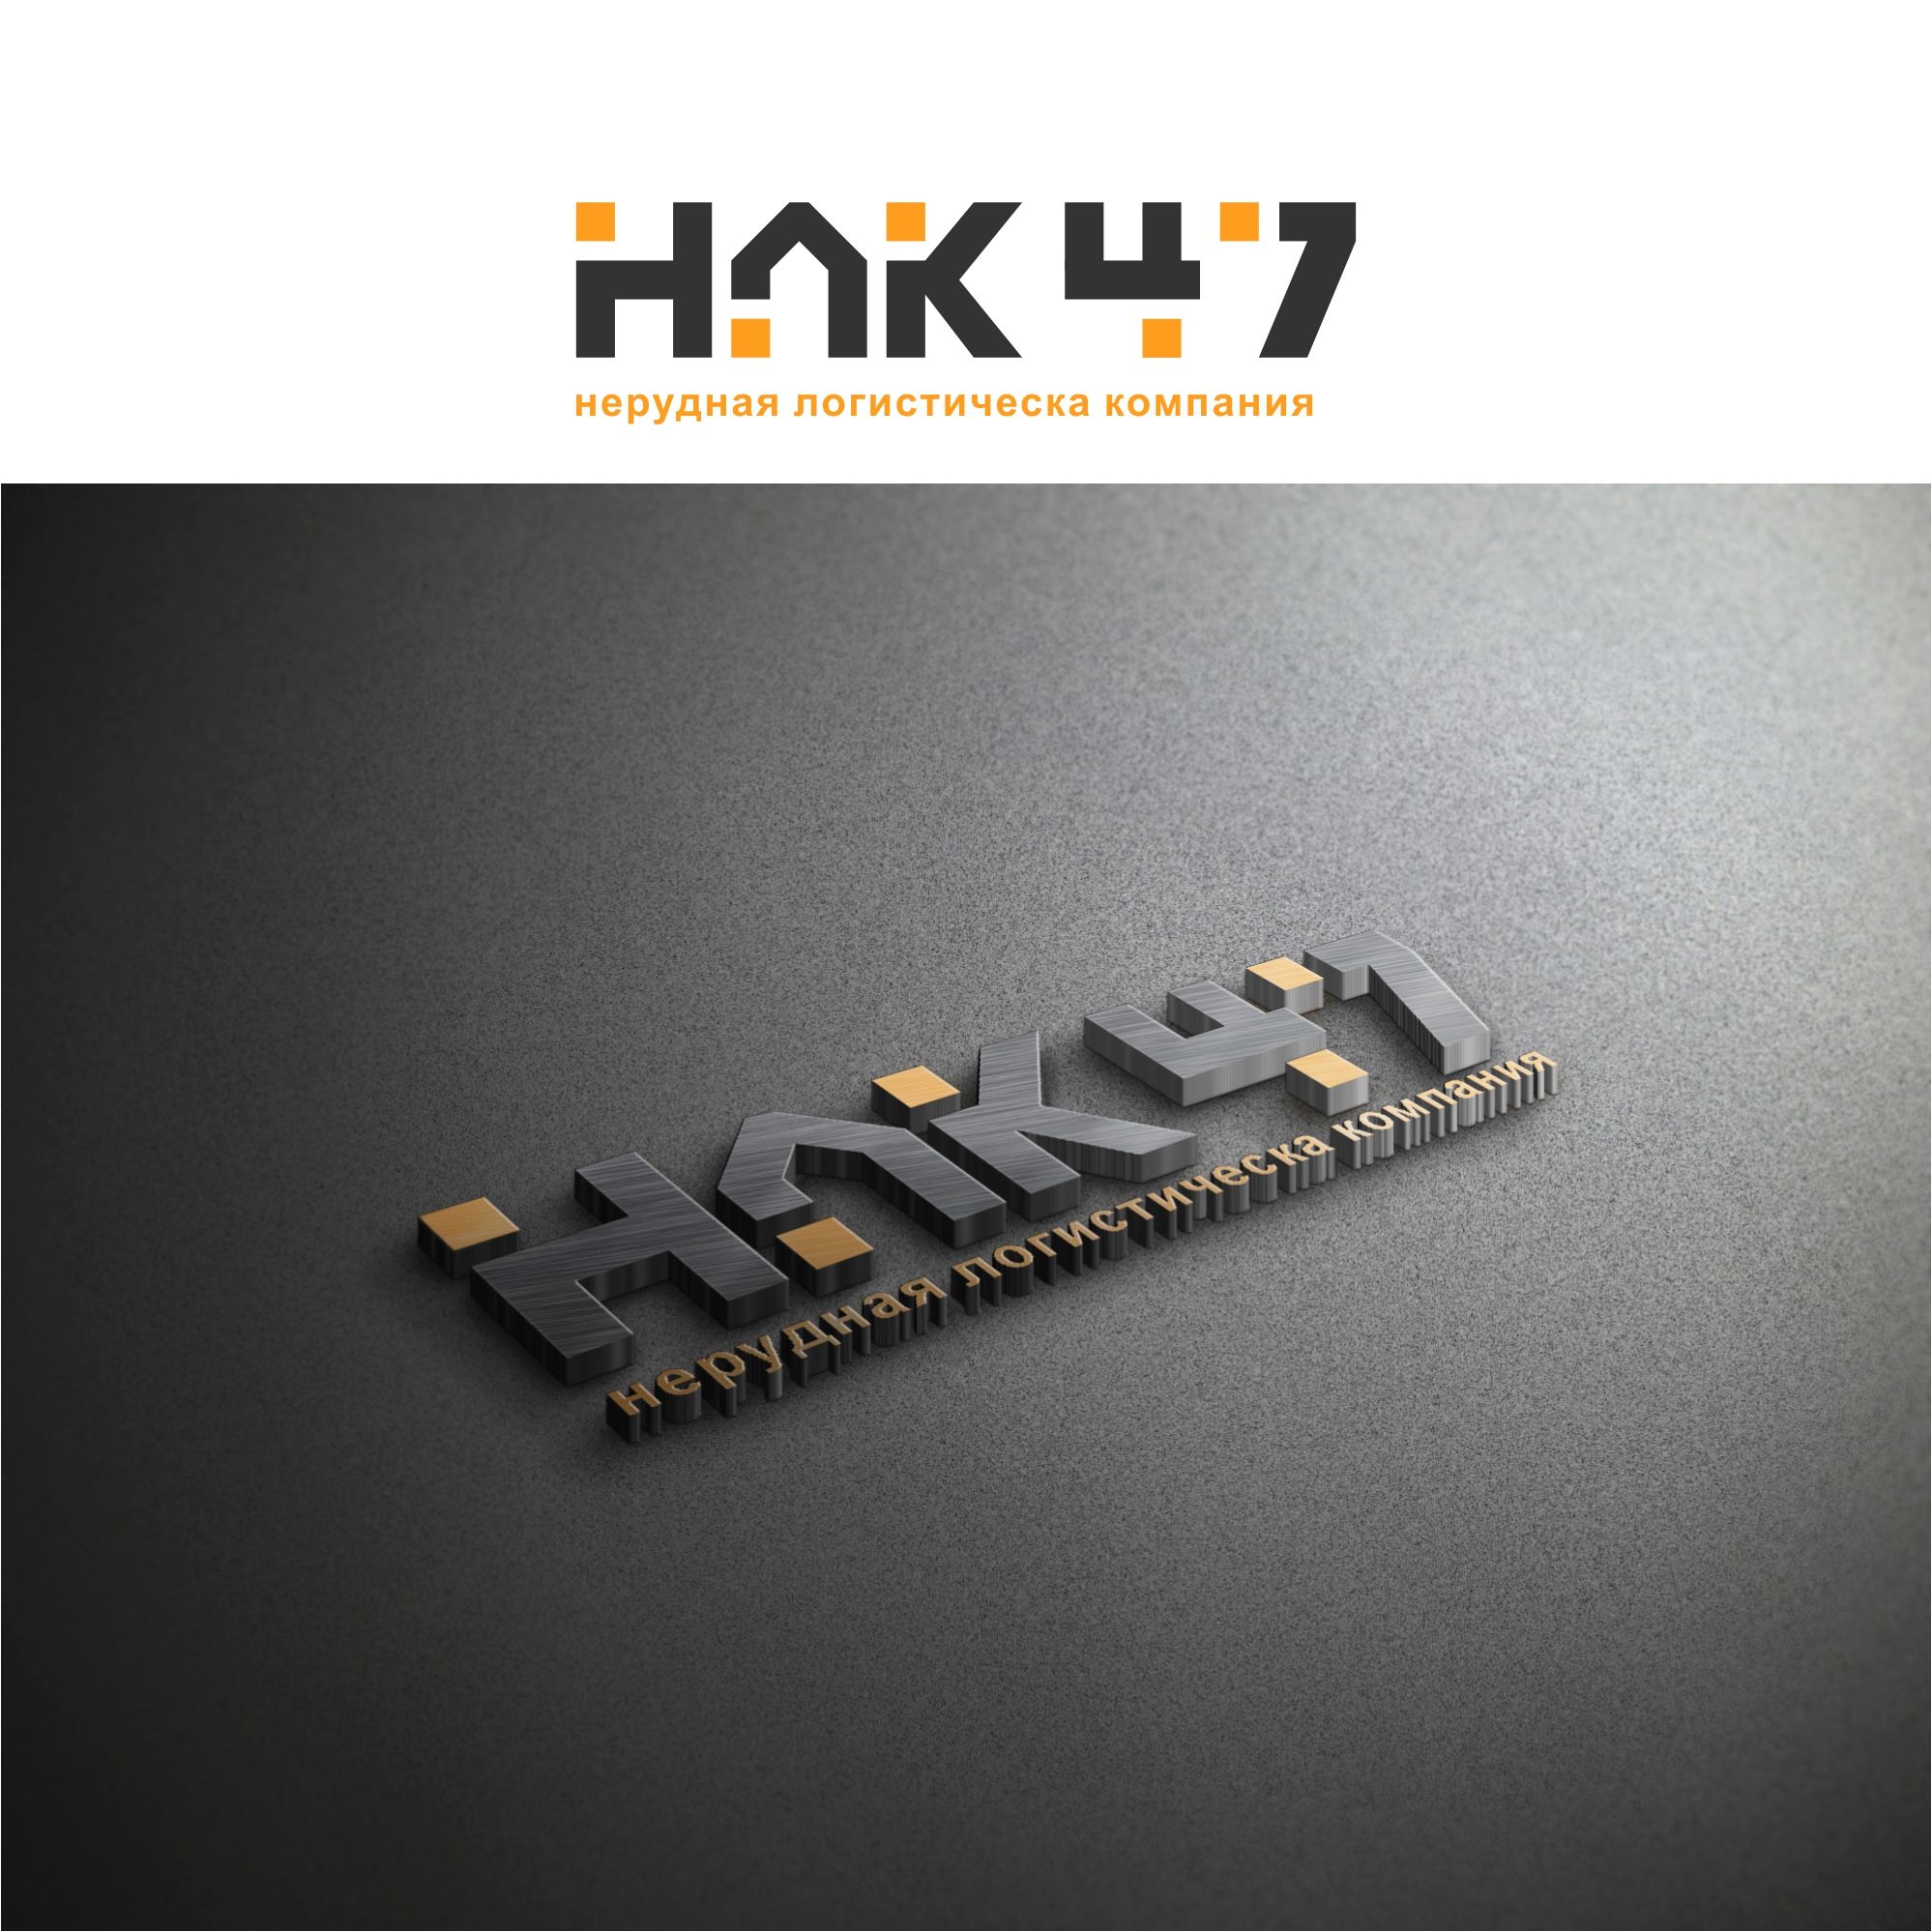 Лого и фирменный стиль для Нерудная логистическая компания 47 (НЛК 47) - дизайнер serz4868